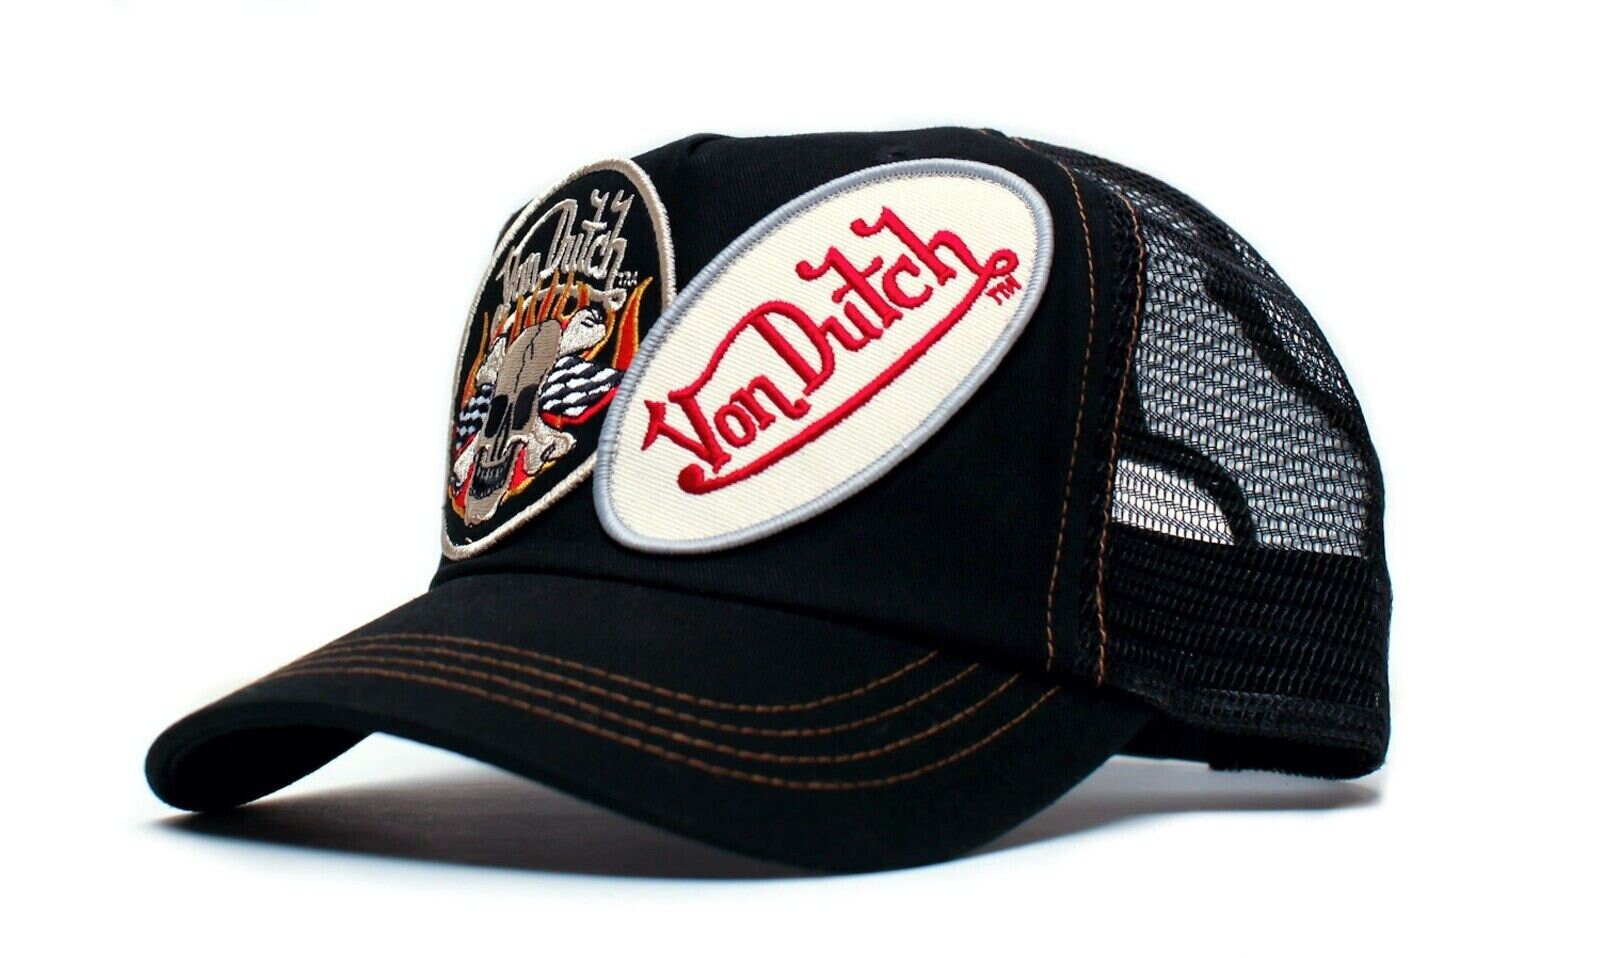 Bass Pro Shop Trucker Hat Kiss Mark / Von Dutch Trucker Hat / Vintage Trucker Hat / unisex Hat